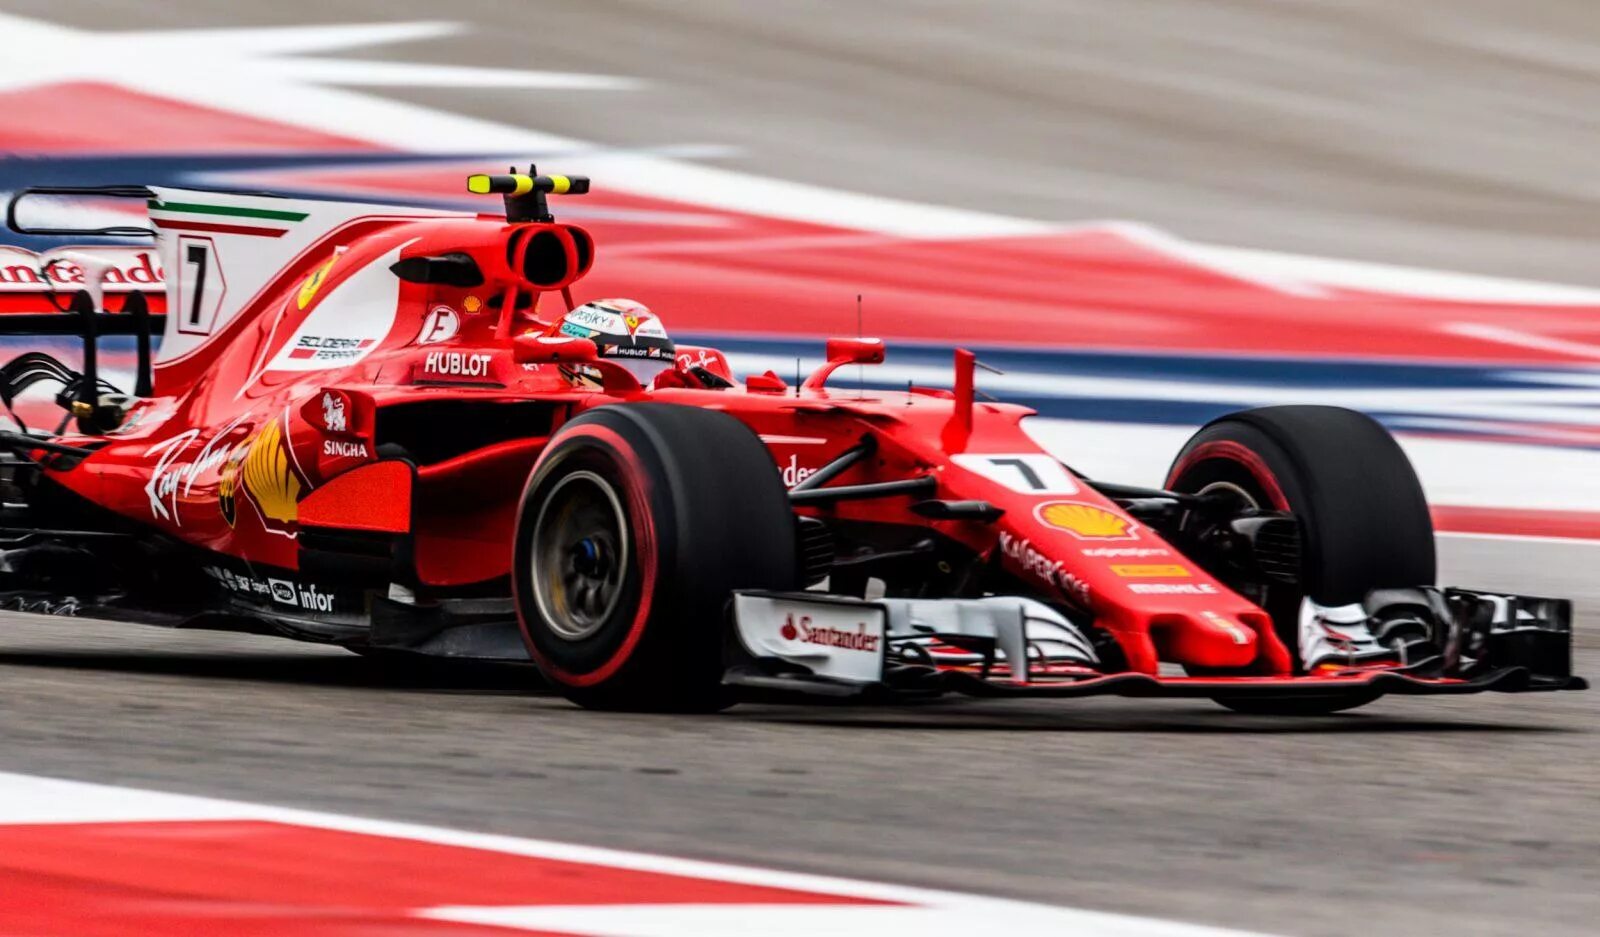 Formula f1 2018 bolids. Болид формулы 1. Скорость гоночного болида формулы 1. F1 bolid Speed. Формула 1а